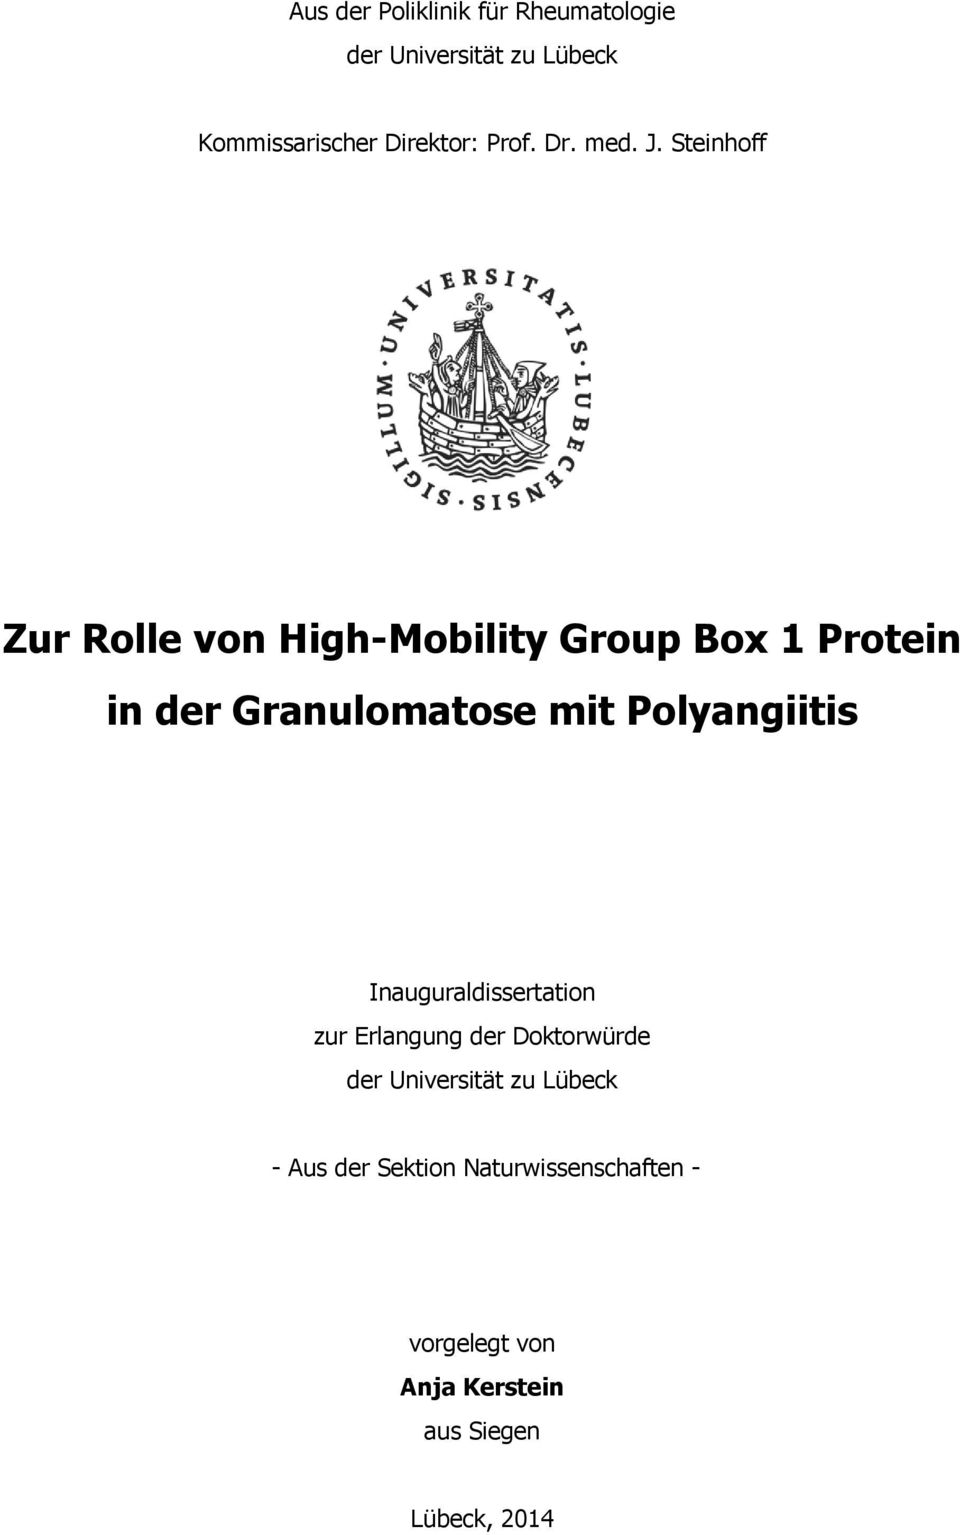 Steinhoff Zur Rolle von High-Mobility Group Box 1 Protein in der Granulomatose mit